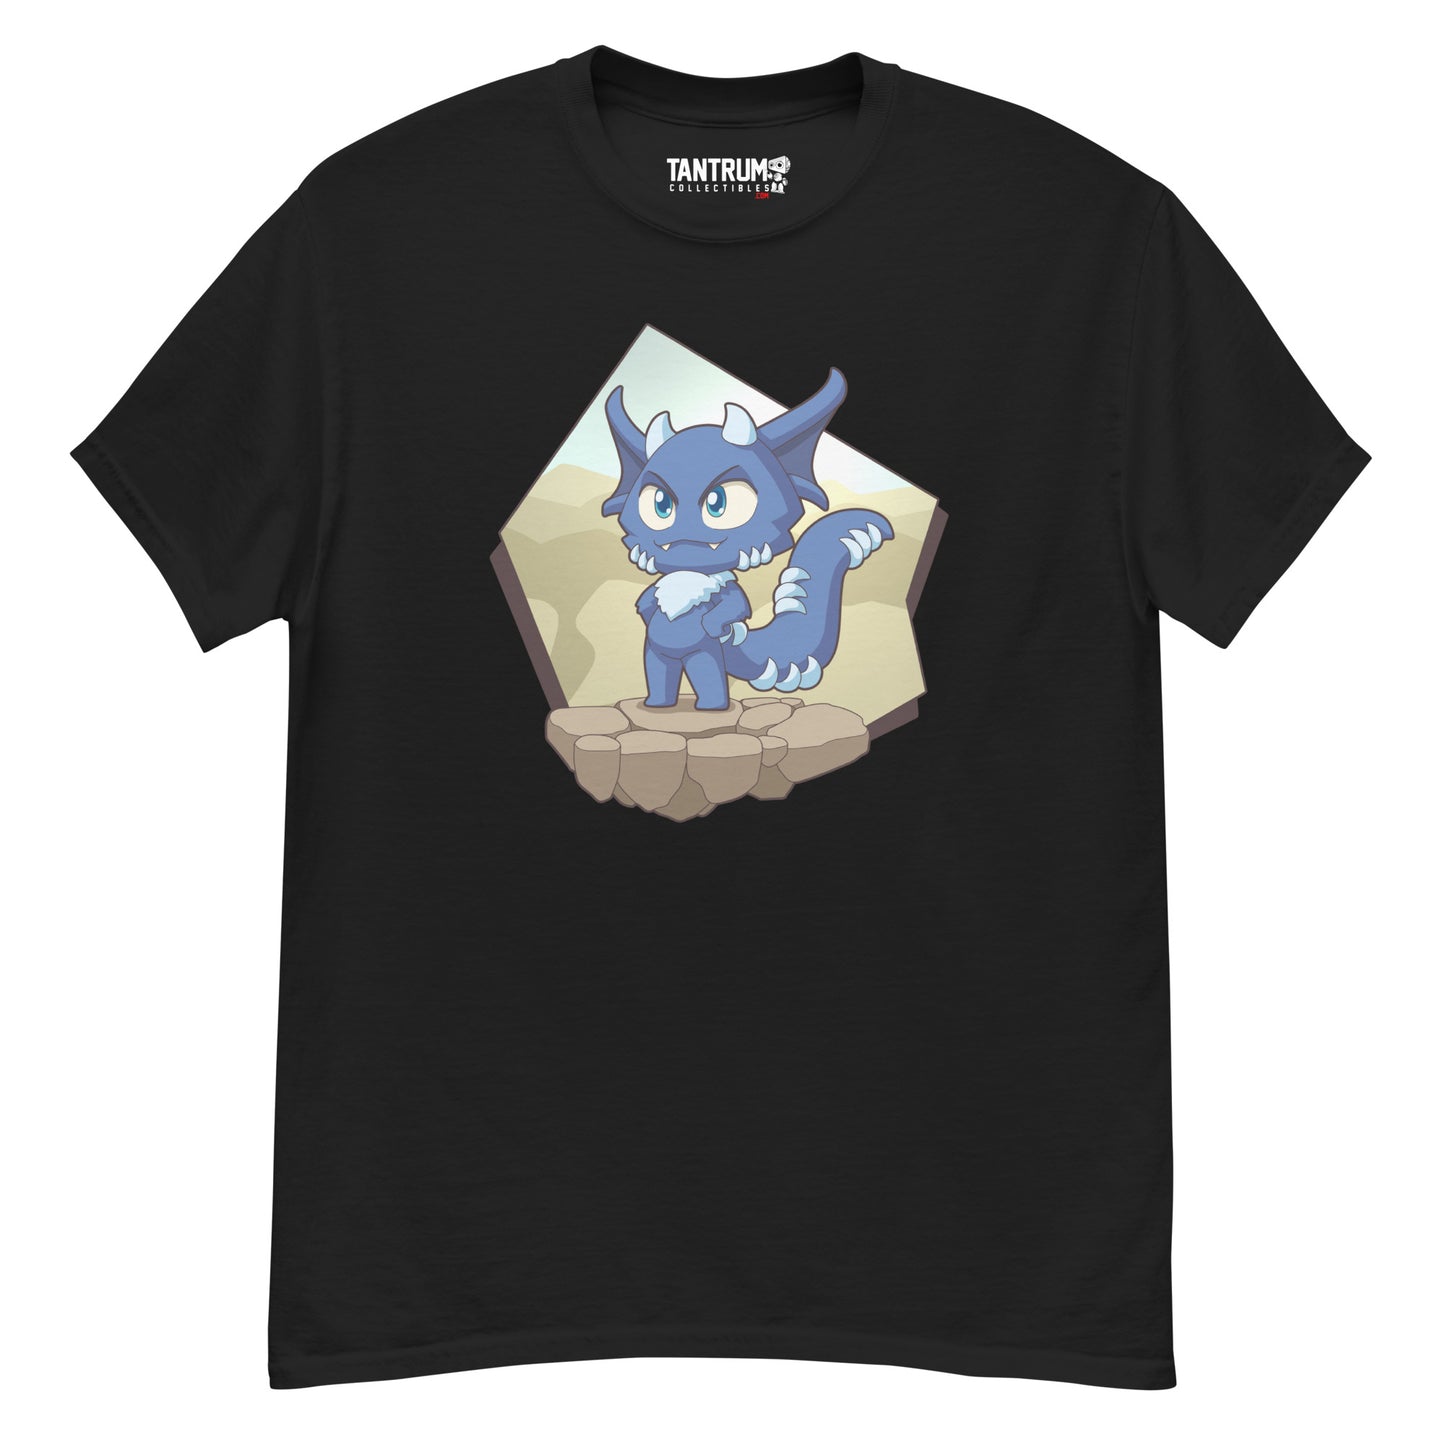 ThaBeast - Unisex T-Shirt - Chibi Blue Guy